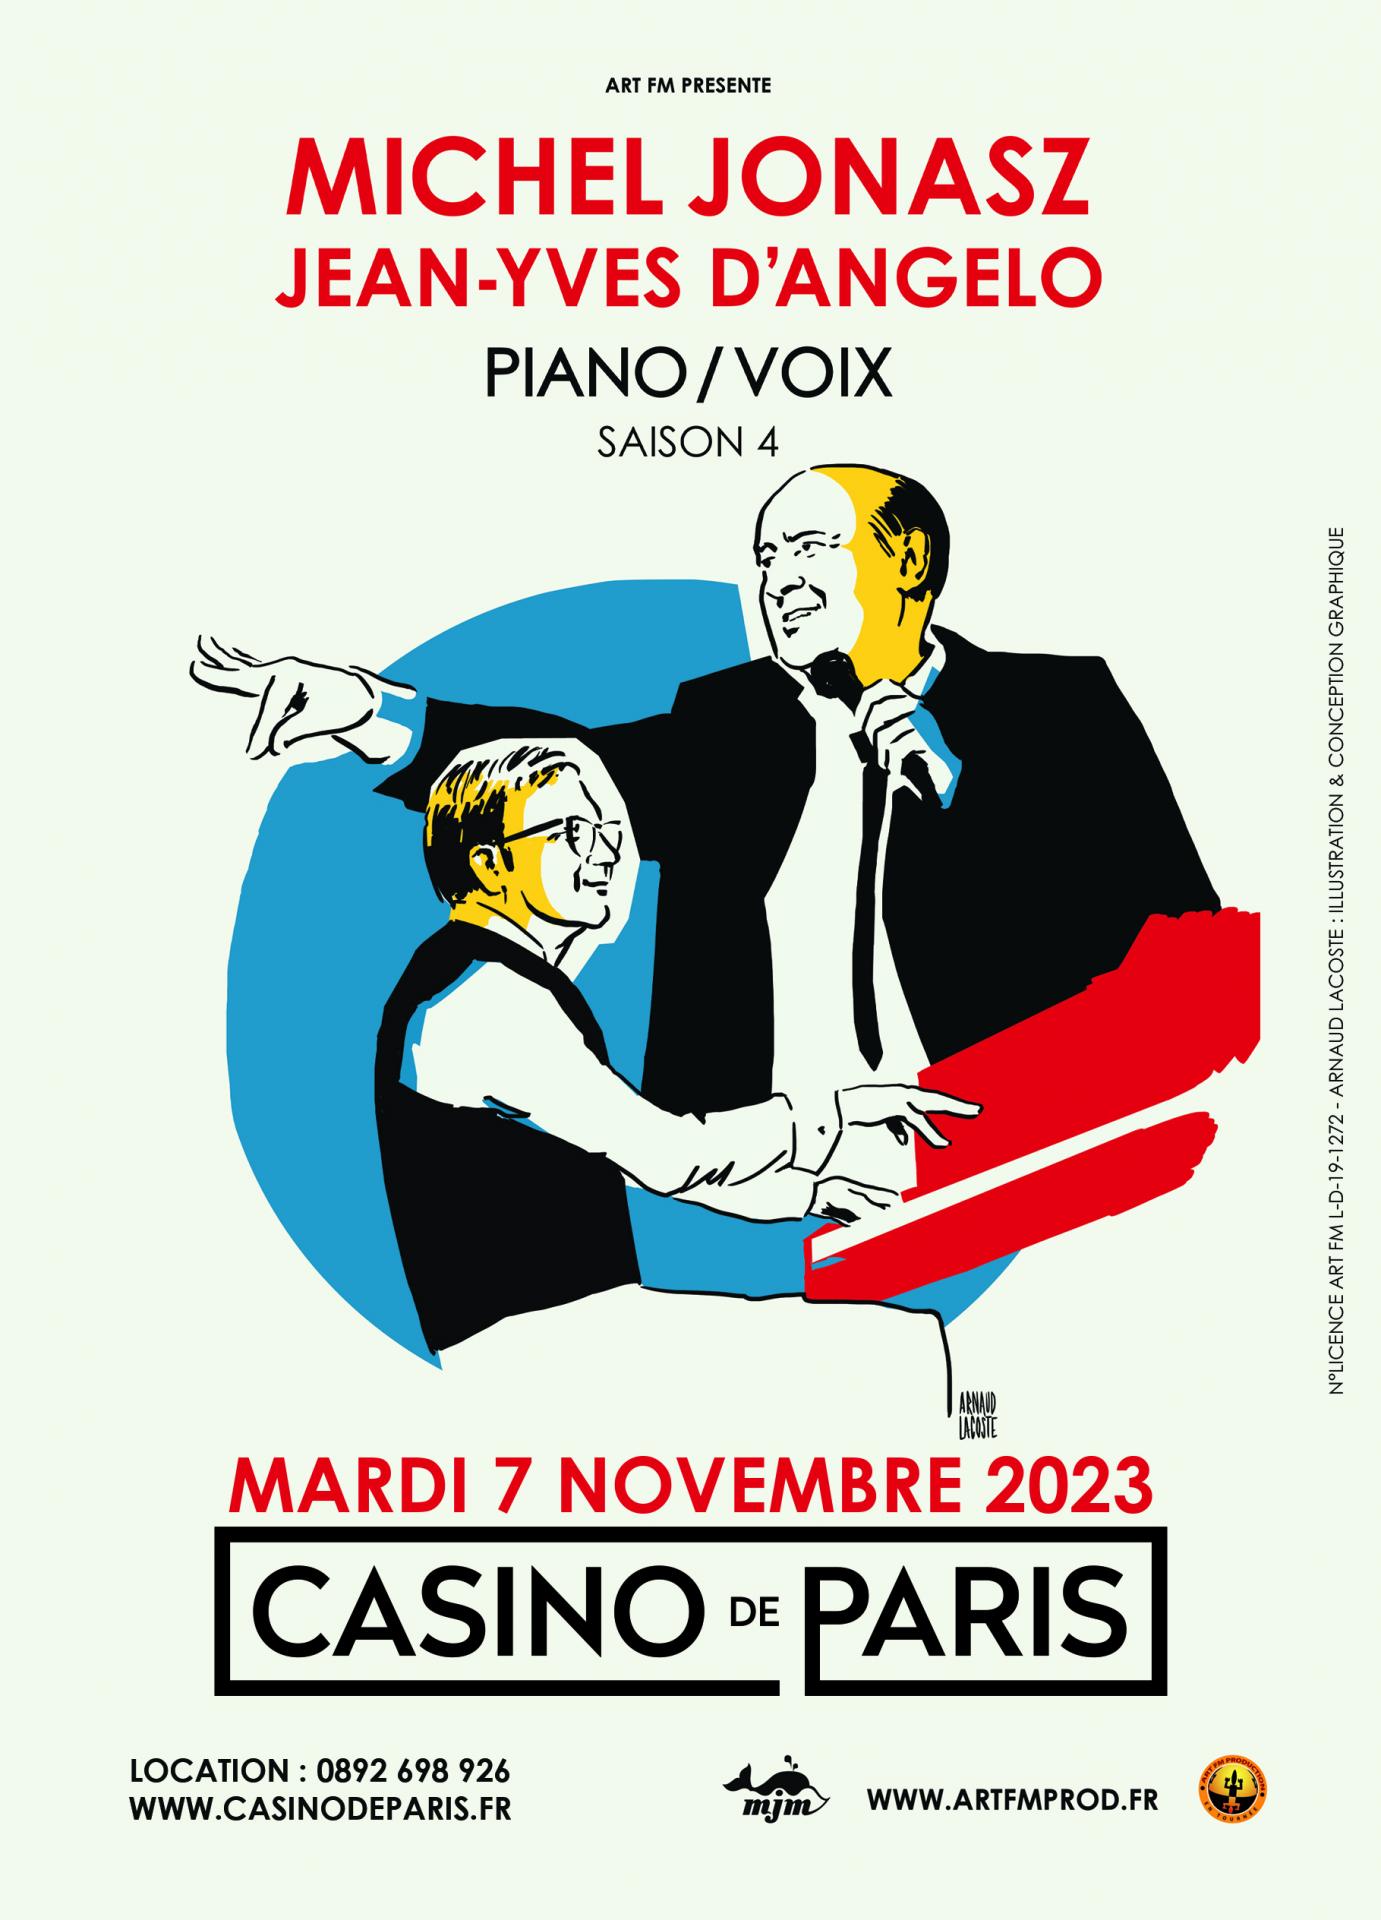 Piano voix visuel casino paris 07 11 23